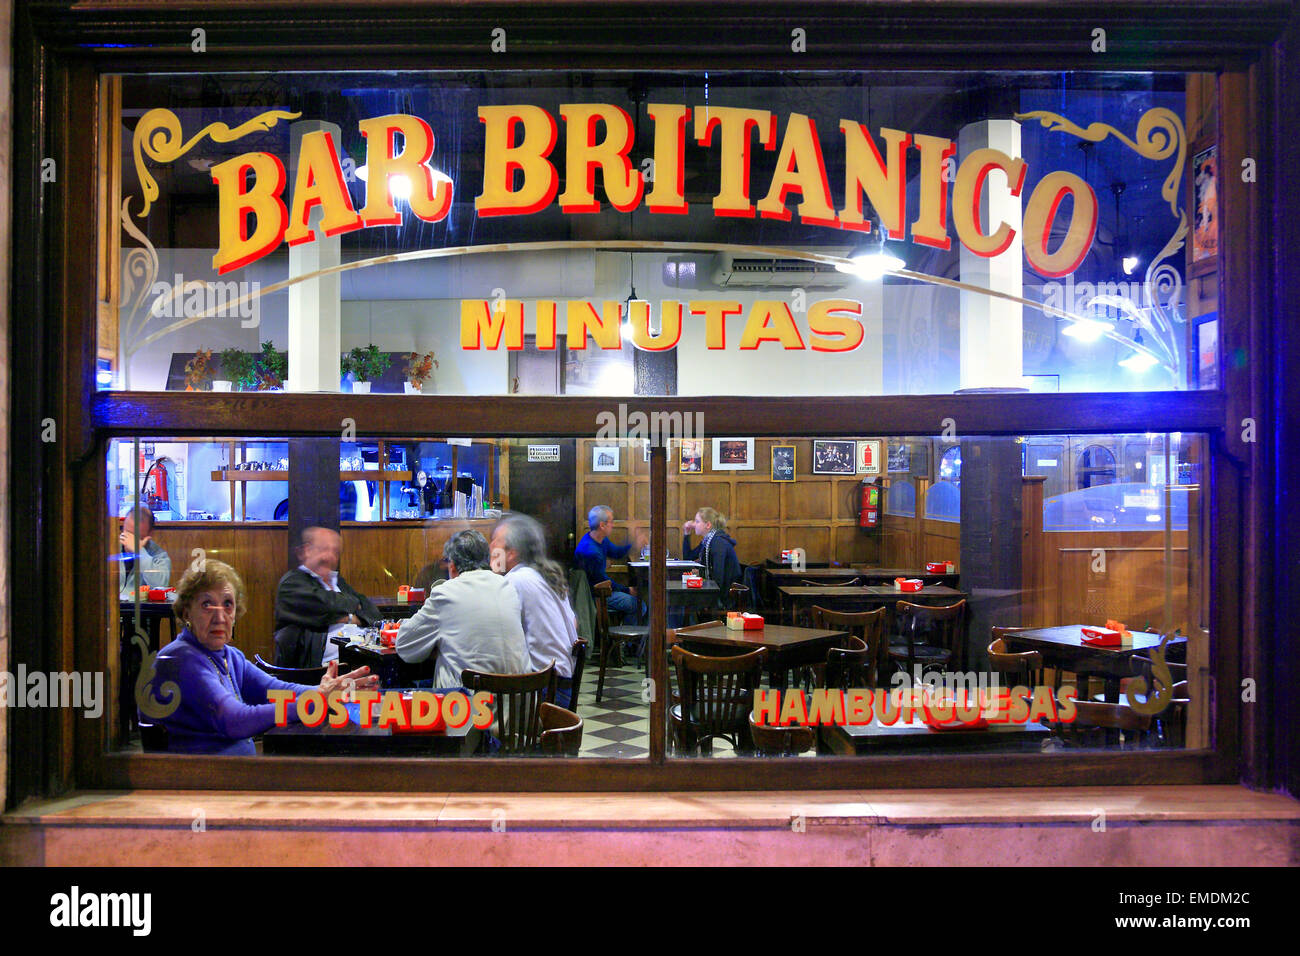 Bar Britanico. (Britanic bar). San Telmo, Buenos Aires, Argentina Stock Photo